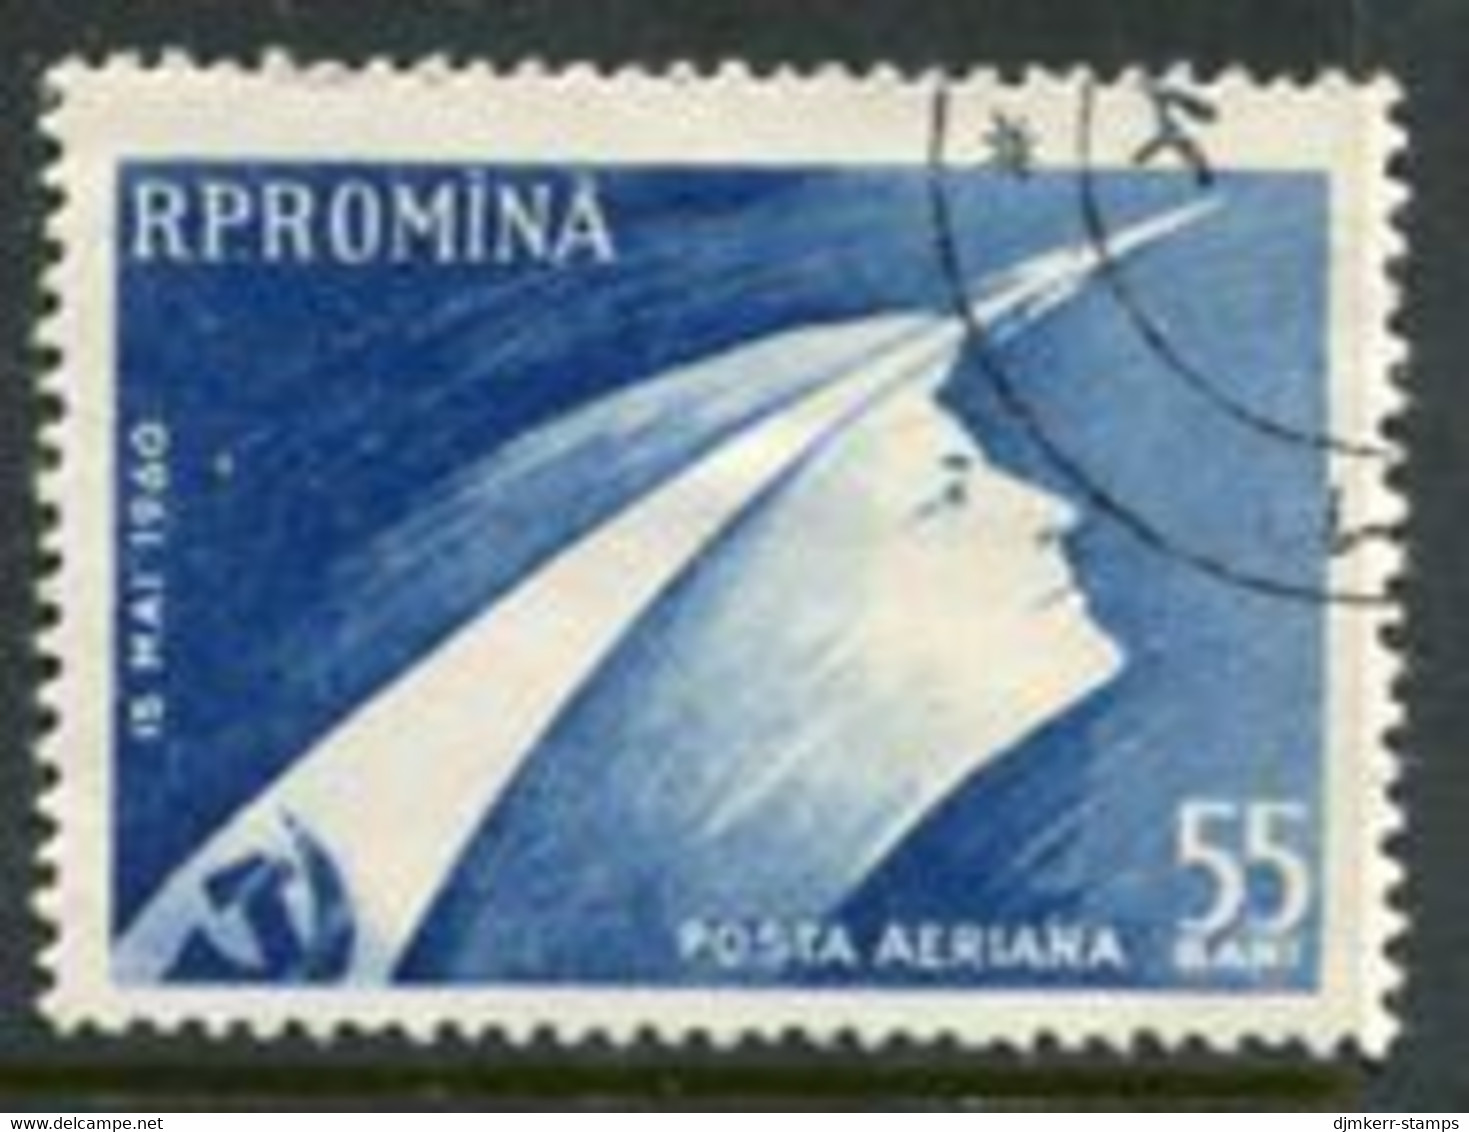 ROMANIA 1960 Launch Of Vostok Spacecraft Used.  Michel 1899 - Gebruikt